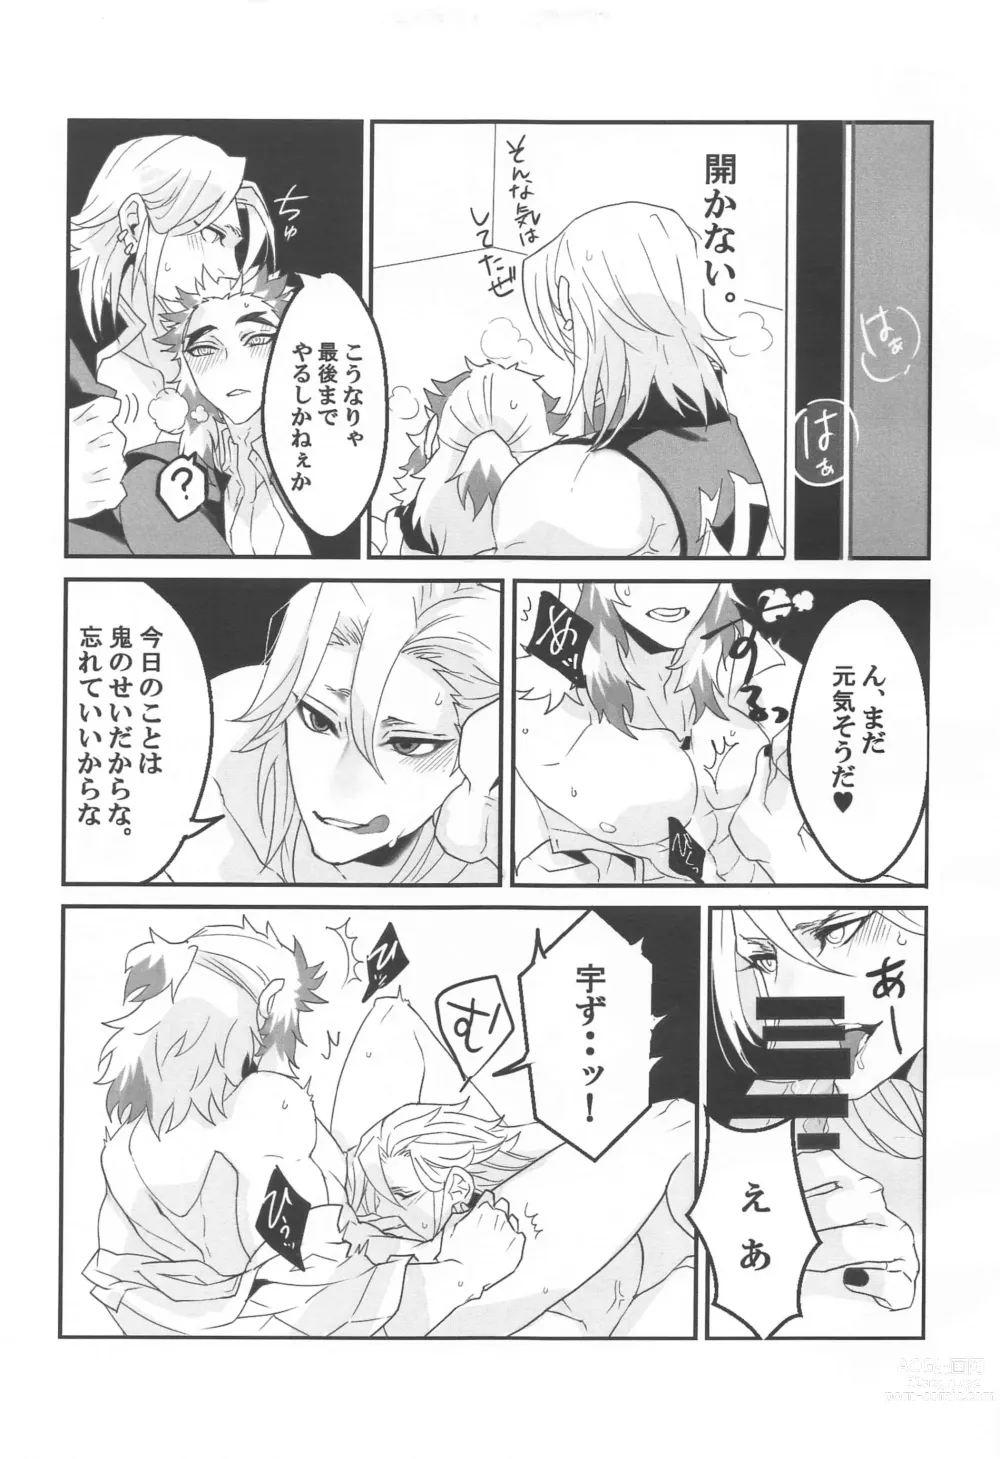 Page 8 of doujinshi ●● Shinai to Derarenai Heya